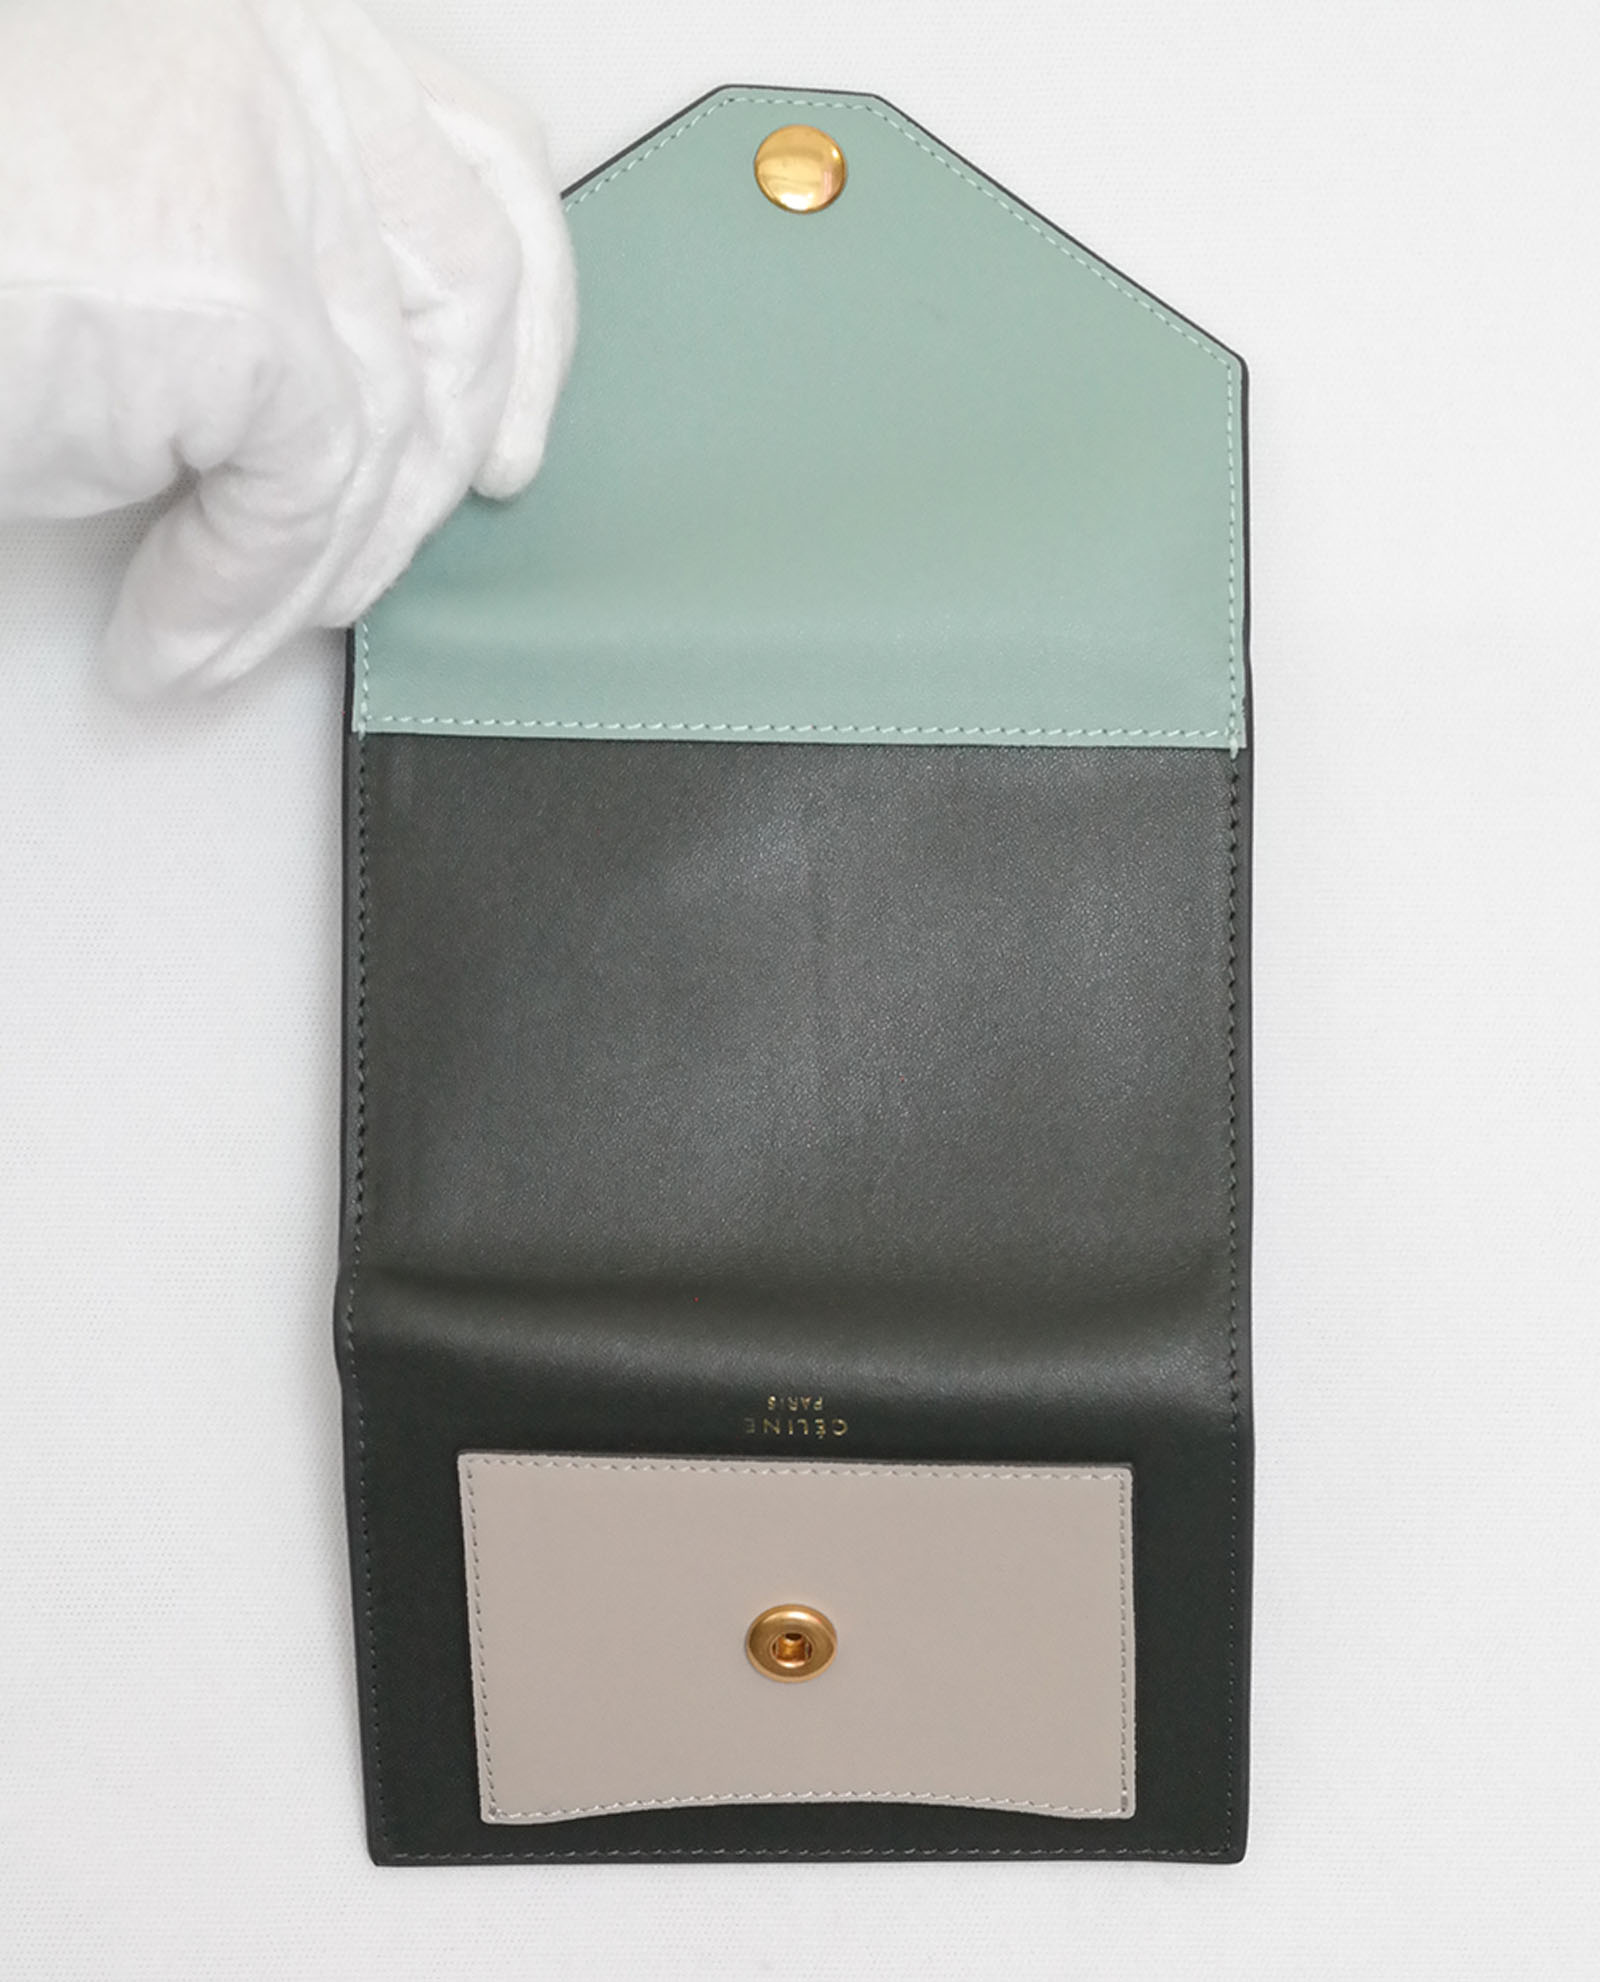 Celine Card Holder, Small Leather Goods - Designer Exchange